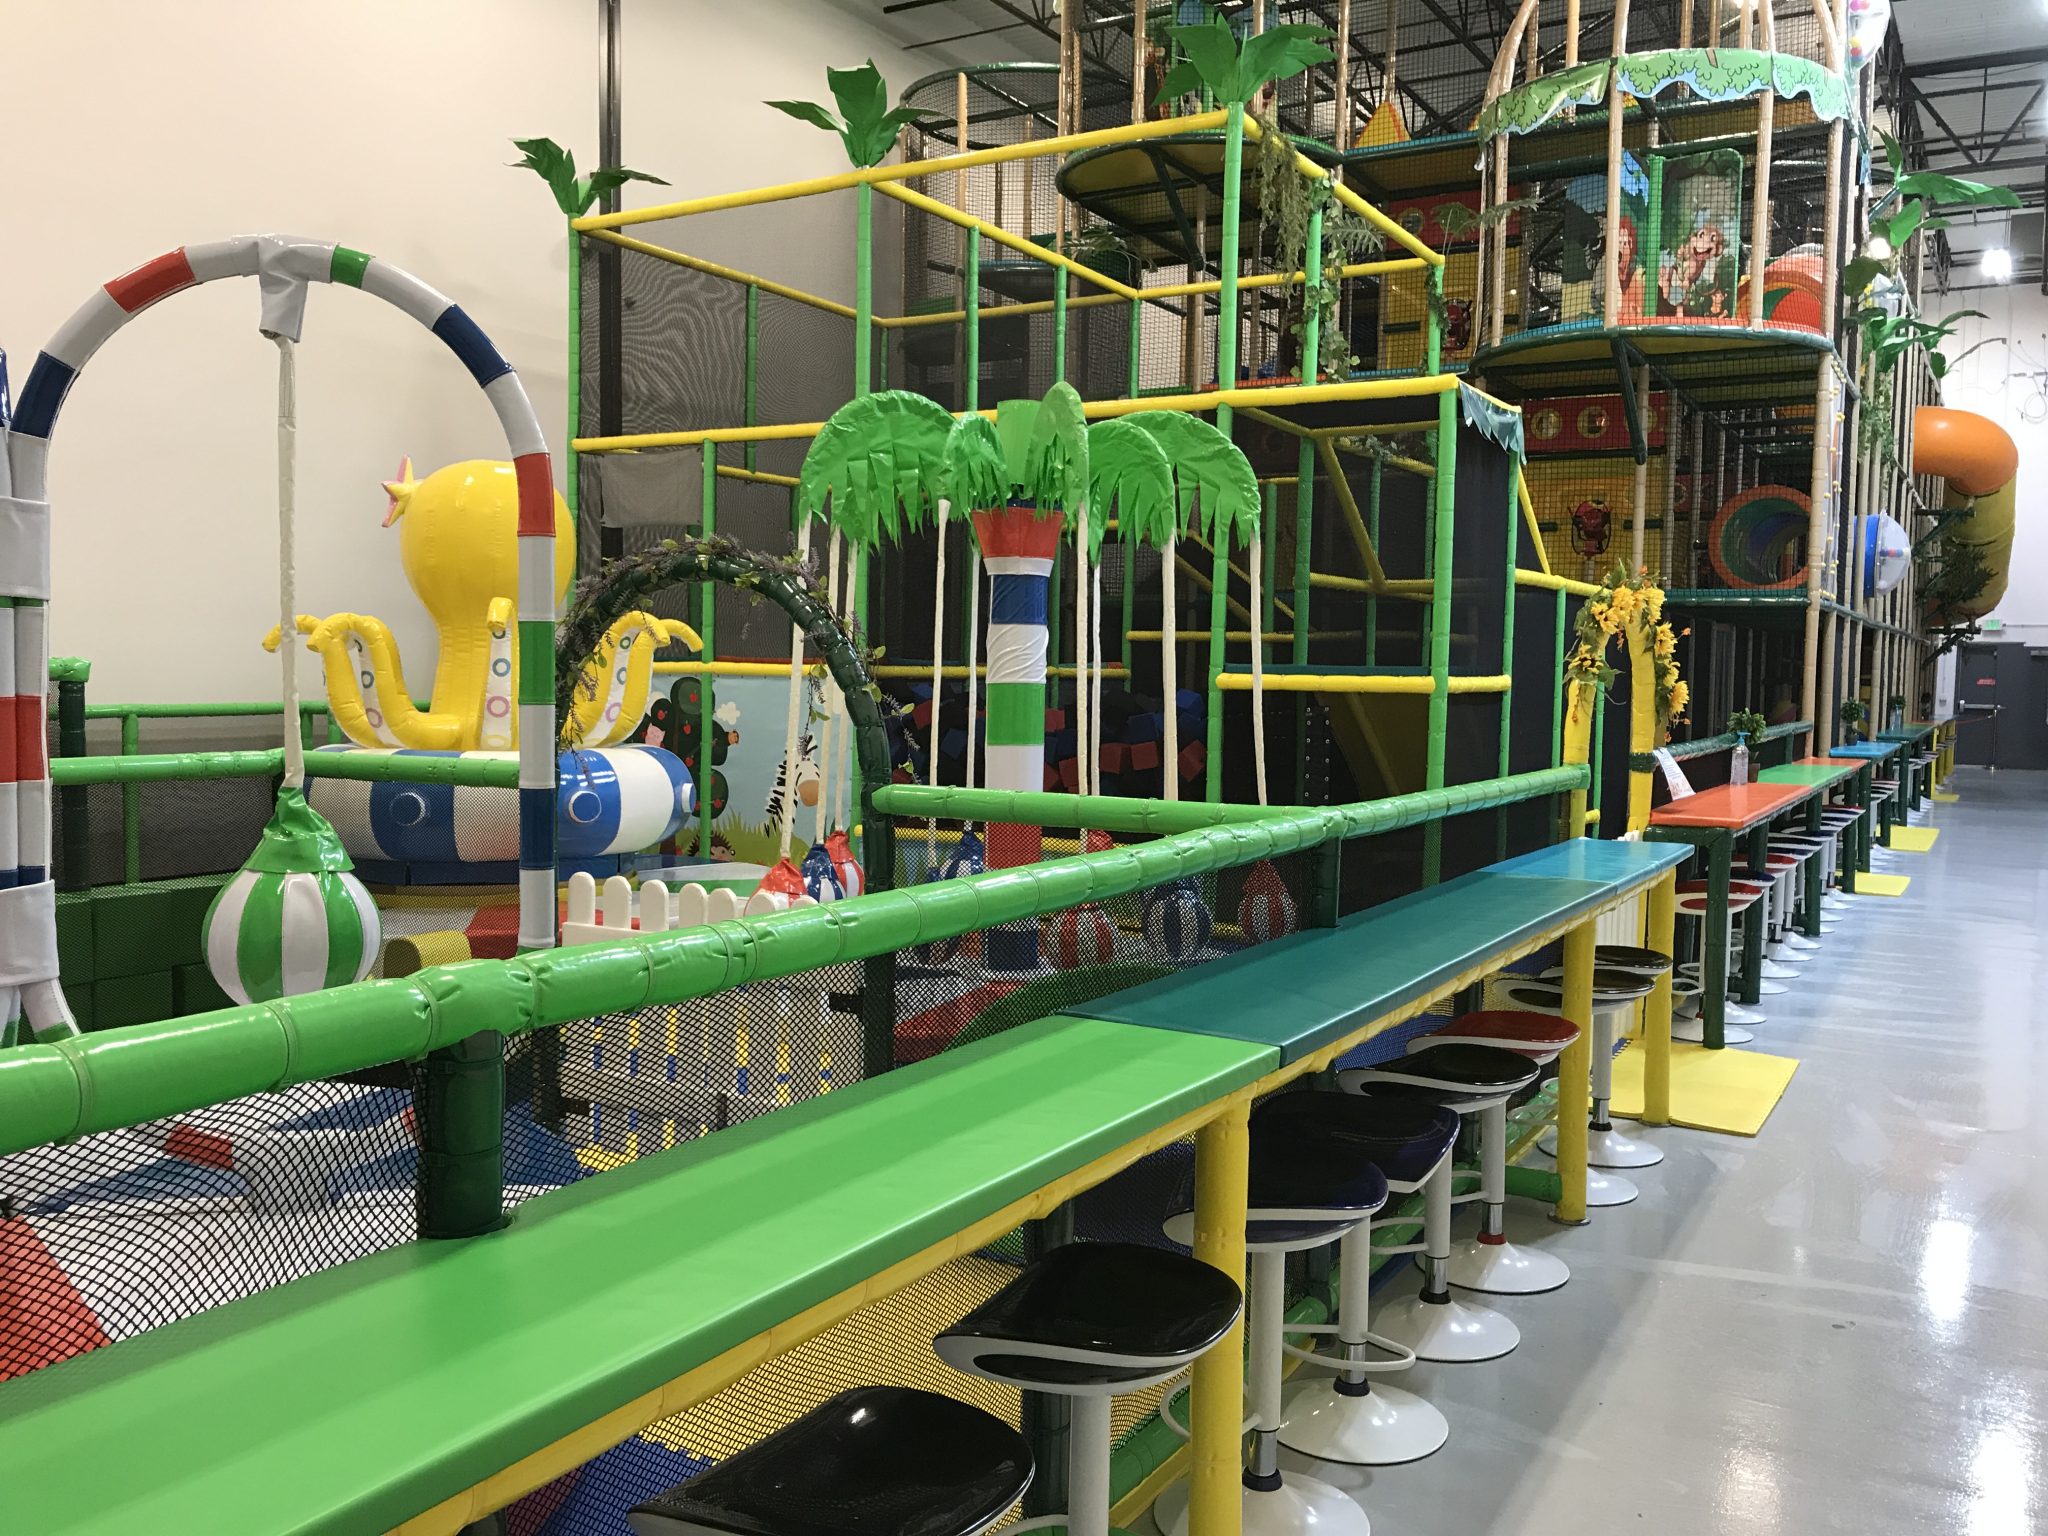 indoor playground: kids planet brownsburg